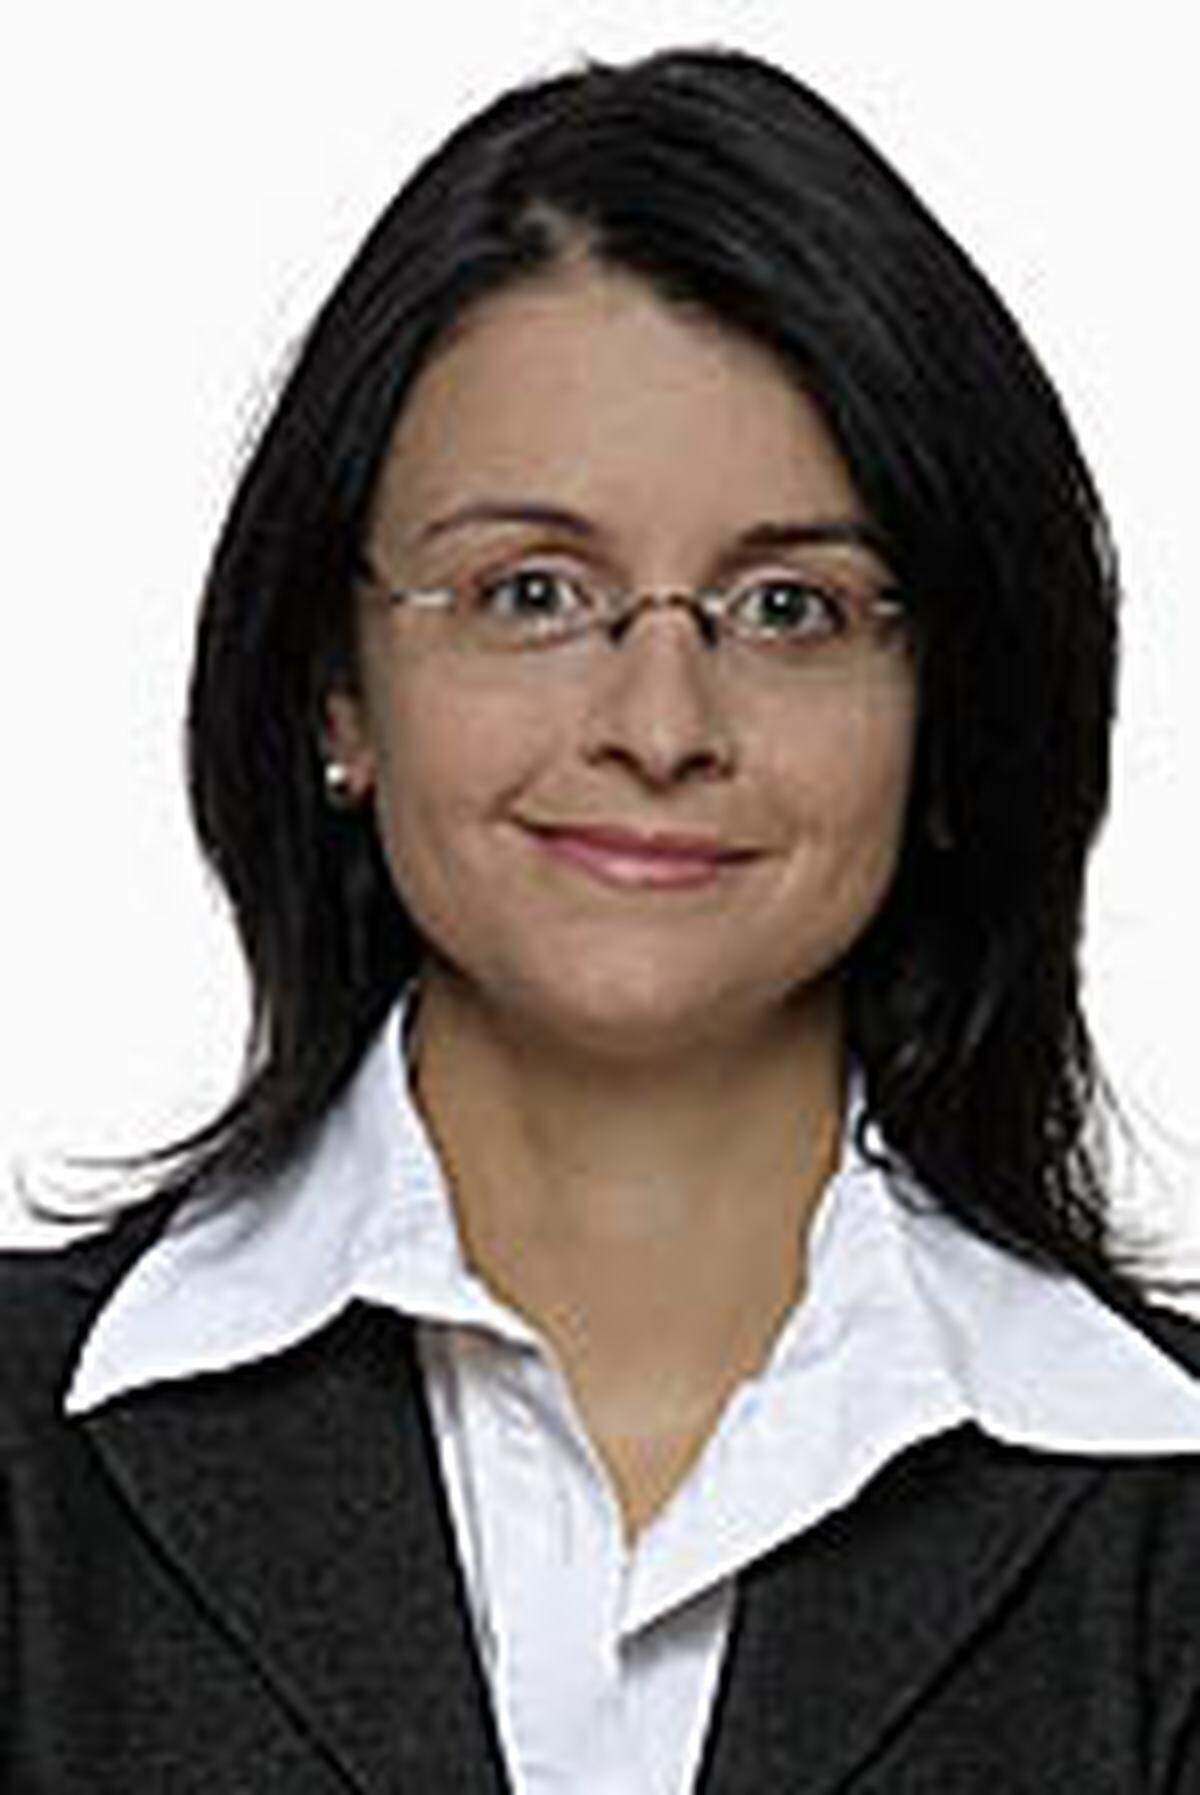 Rechtsanwältin Julia Hornsteiner verstärkt als Junior Partnerin das IP Team der renommierten internationalen Wirtschaftskanzlei Schönherr.